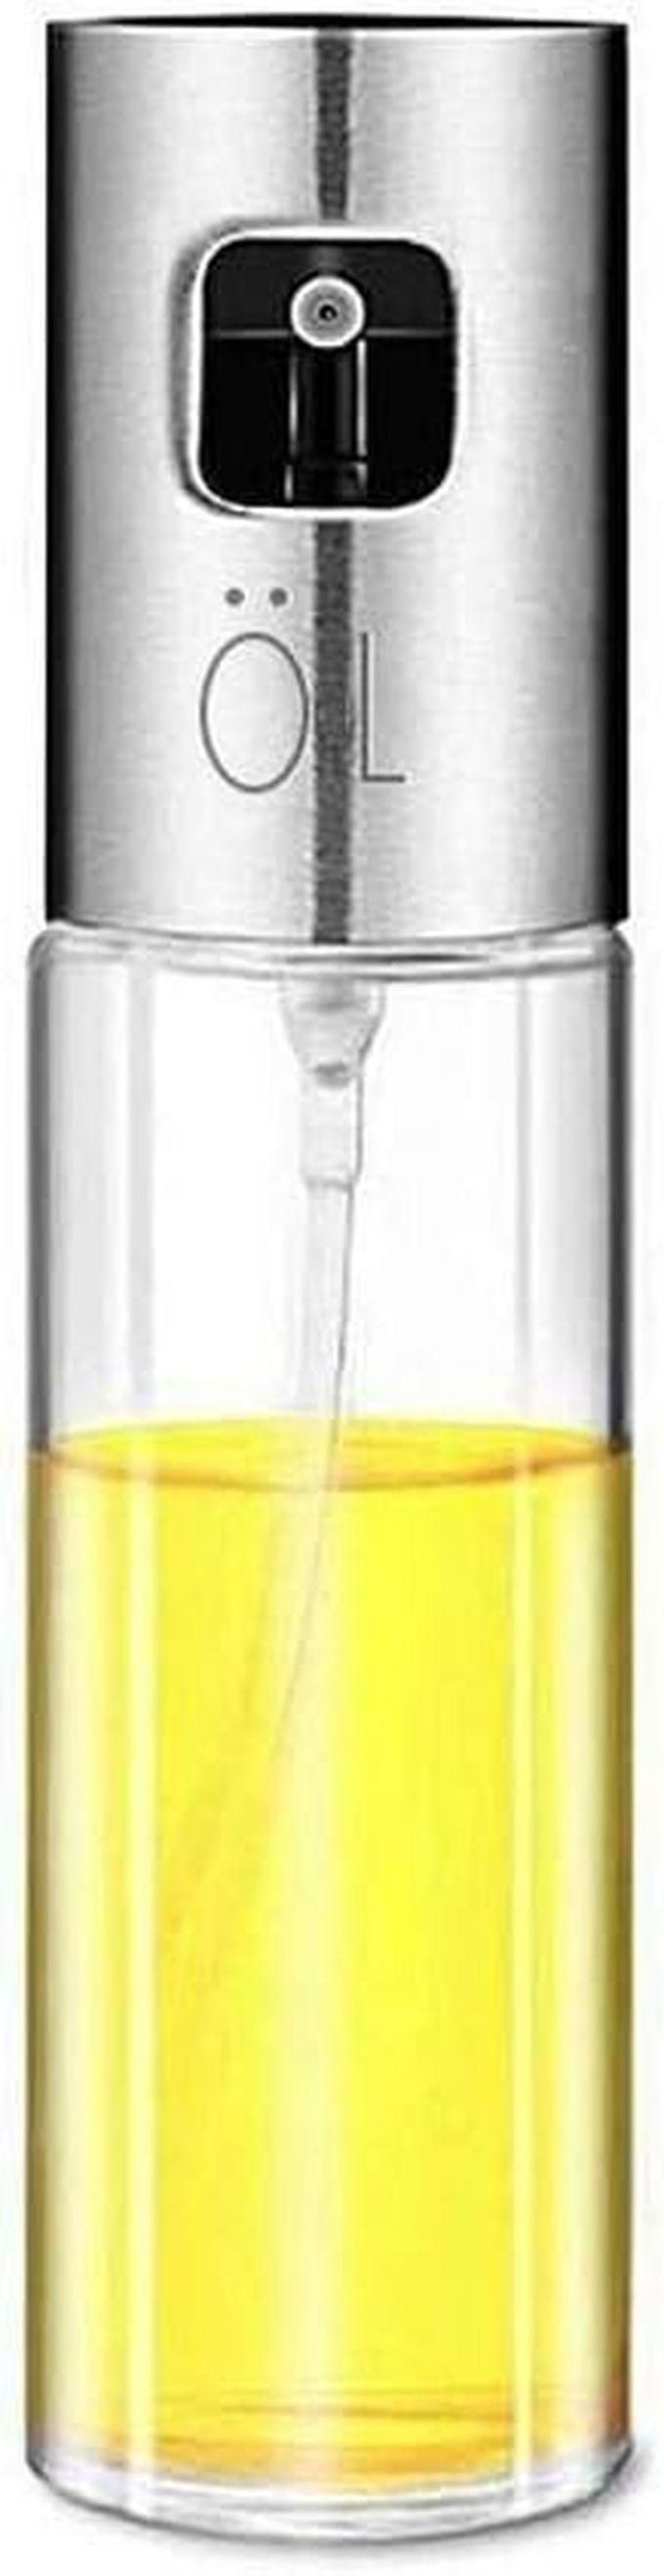 Olive Oil Sprayer, Food-grade Glass Oil Spray Bottle